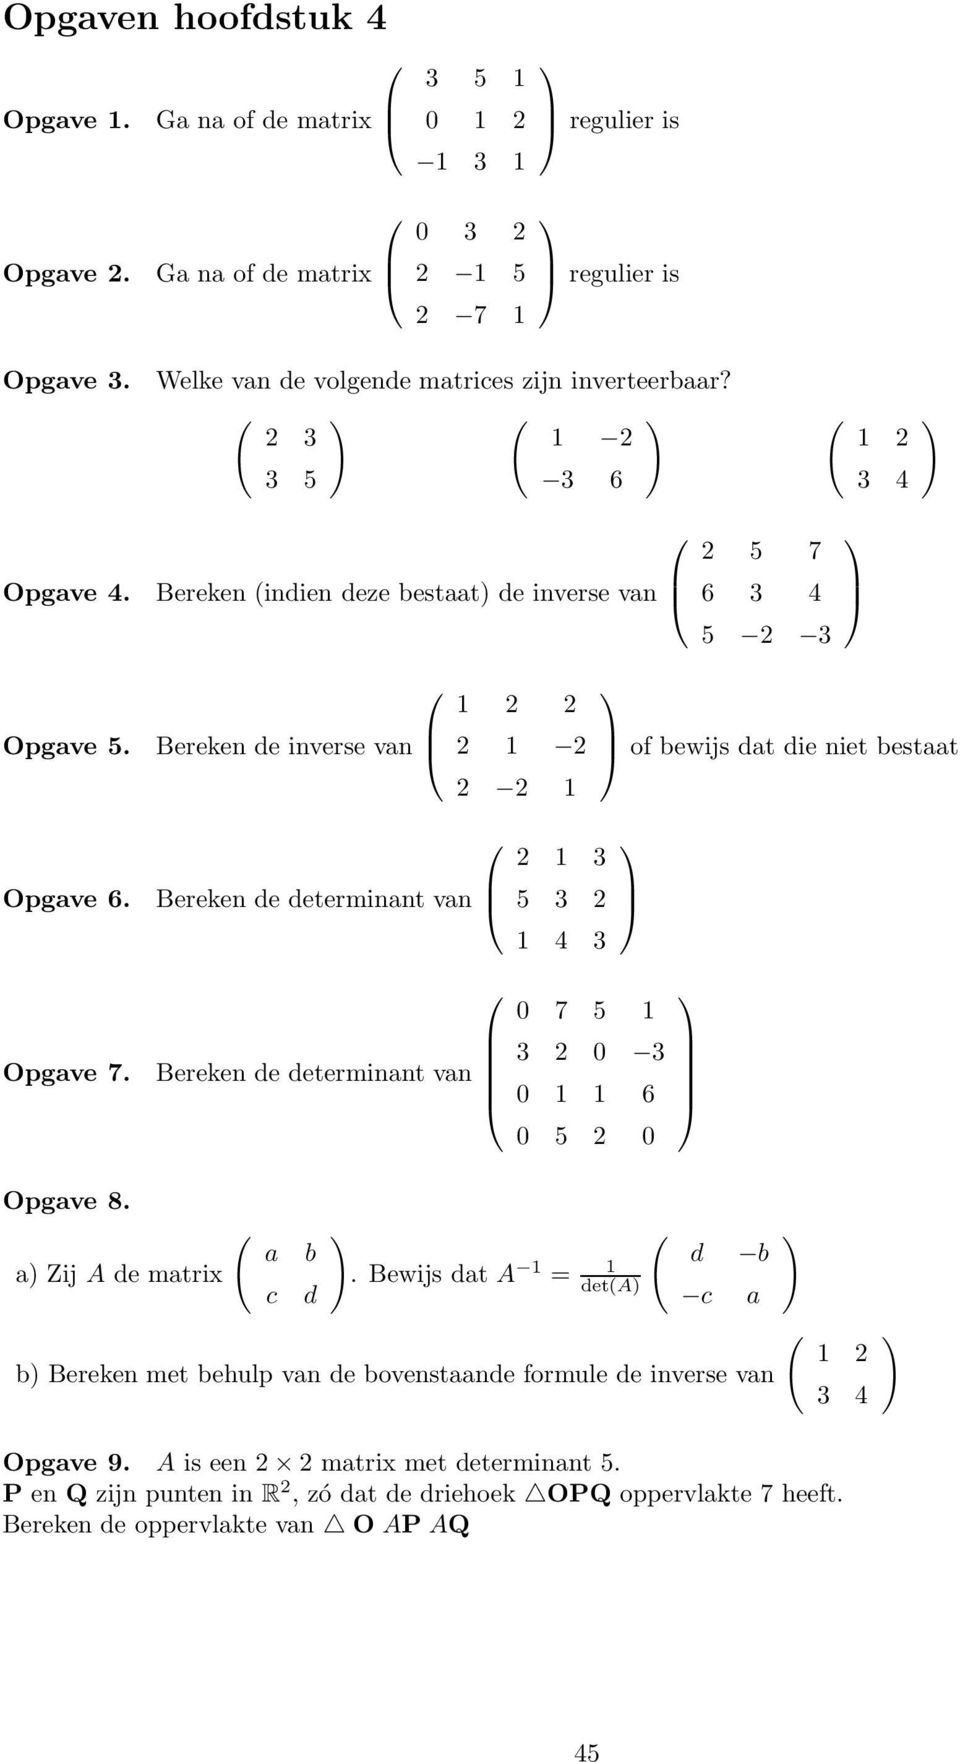 Bereken indien deze bestaat de inverse van Bereken de inverse van Bereken de determinant van 2 2 2 2 2 2 2 3 5 3 2 4 3 2 5 7 6 3 4 5 2 3 of bewijs dat die niet bestaat Opgave 7.